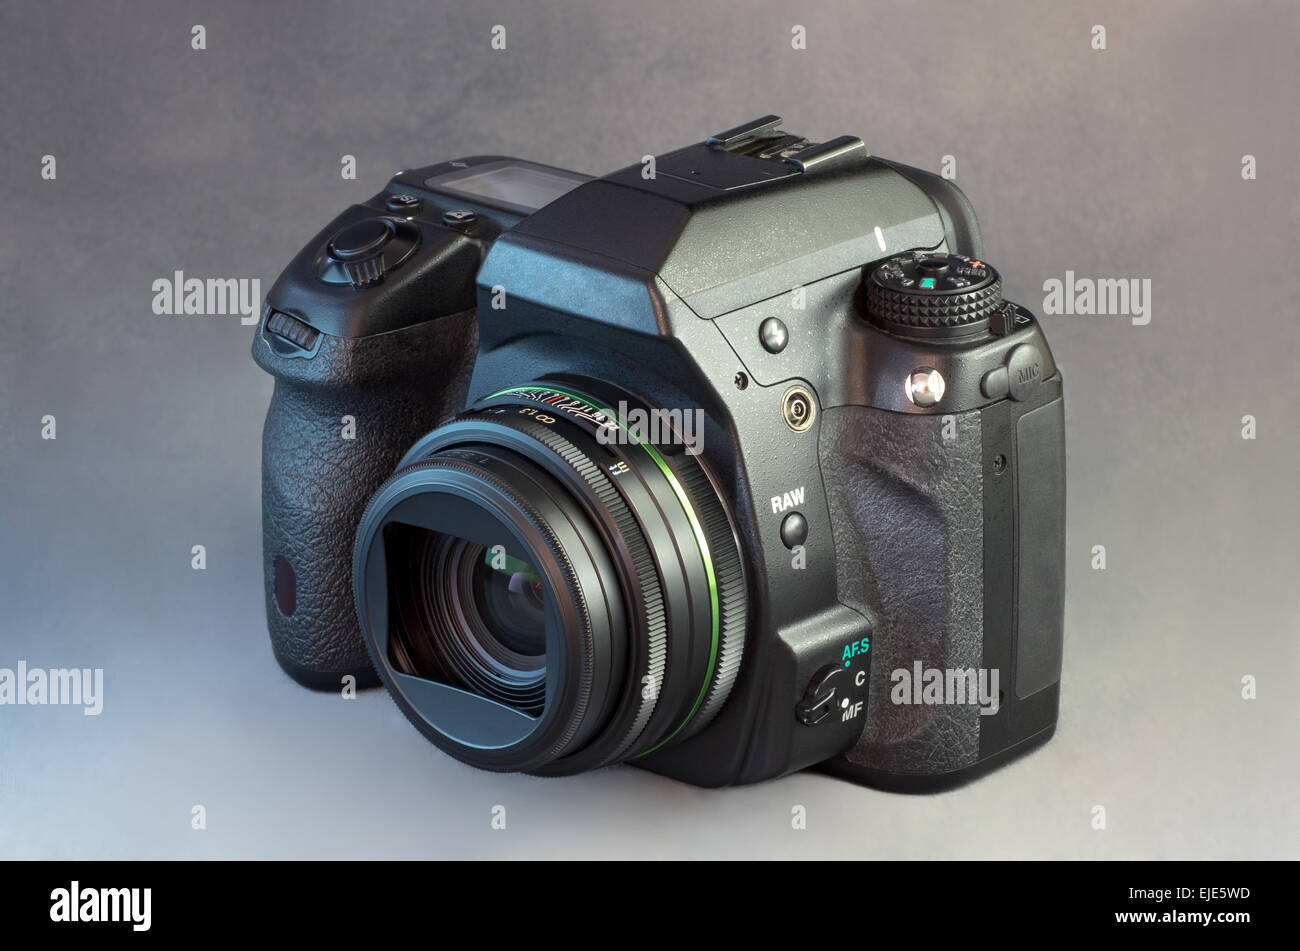 Fotocamera reflex digitale a obiettivo singolo nero telecamera e obiettivo grandangolare contro uno sfondo grigio Foto Stock